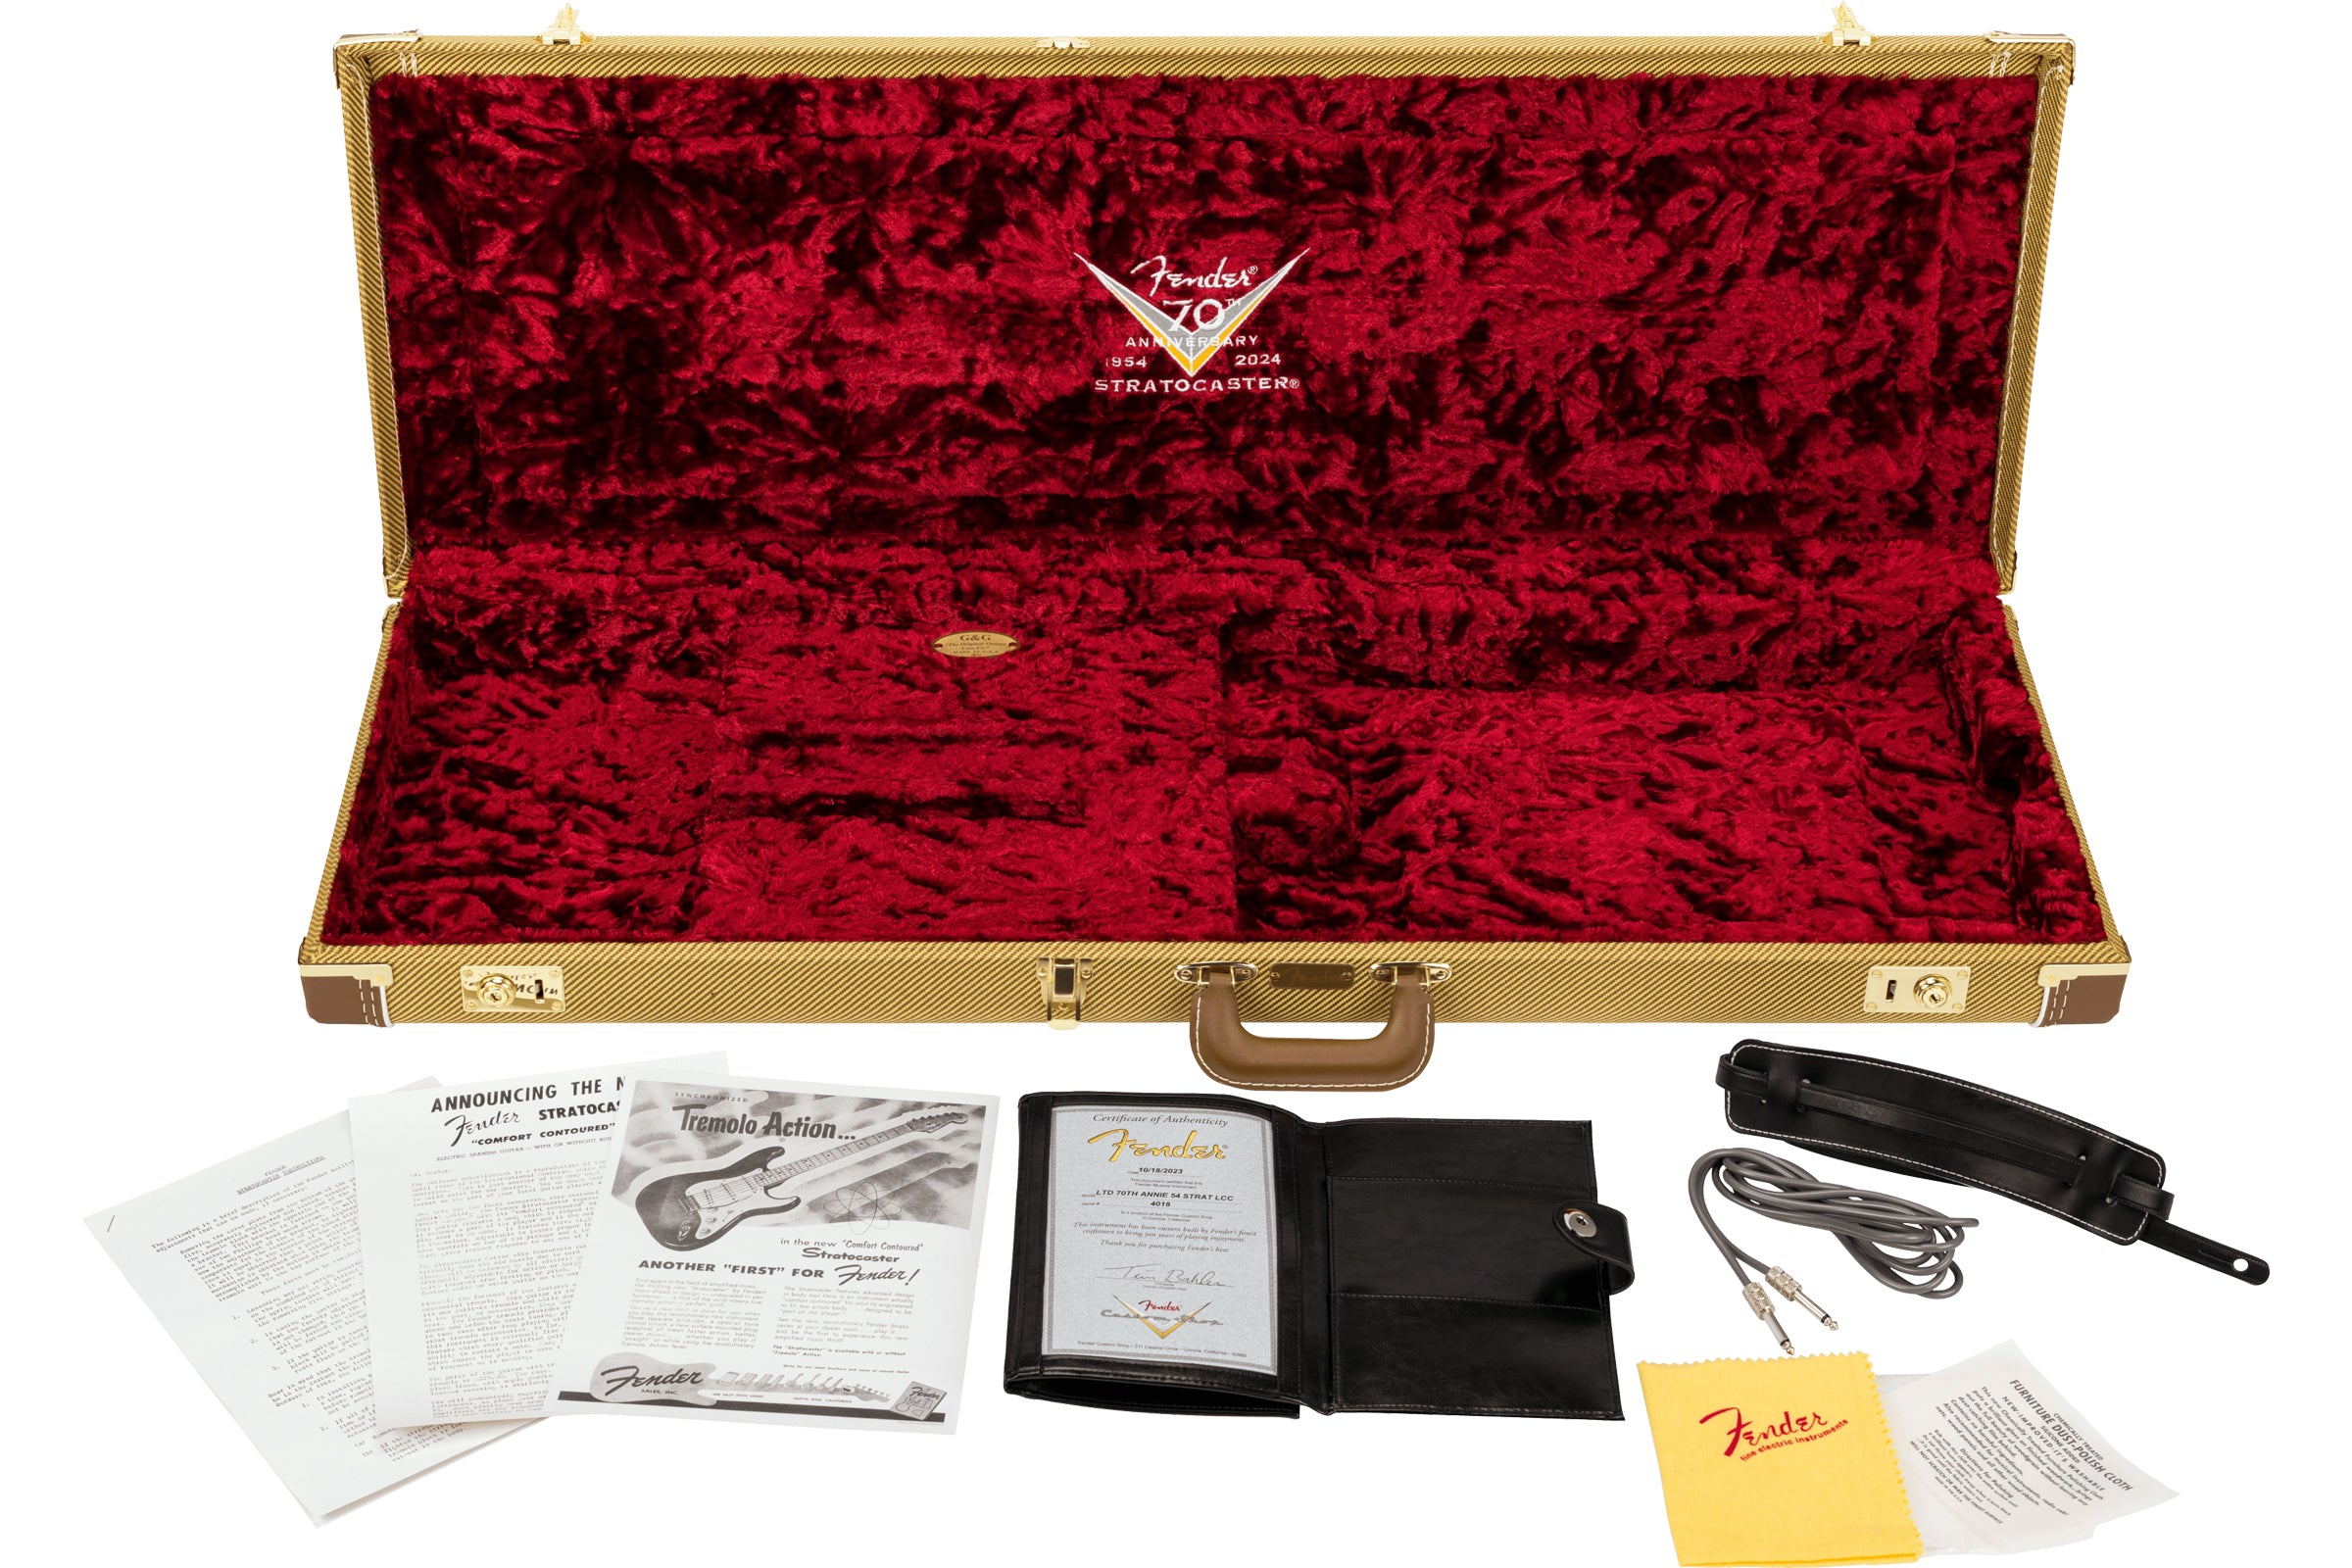 กีตาร์ไฟฟ้า Fender Custom Shop Limited Edition 70th Anniversary 1954 Stratocaster, Super Heavy Relic